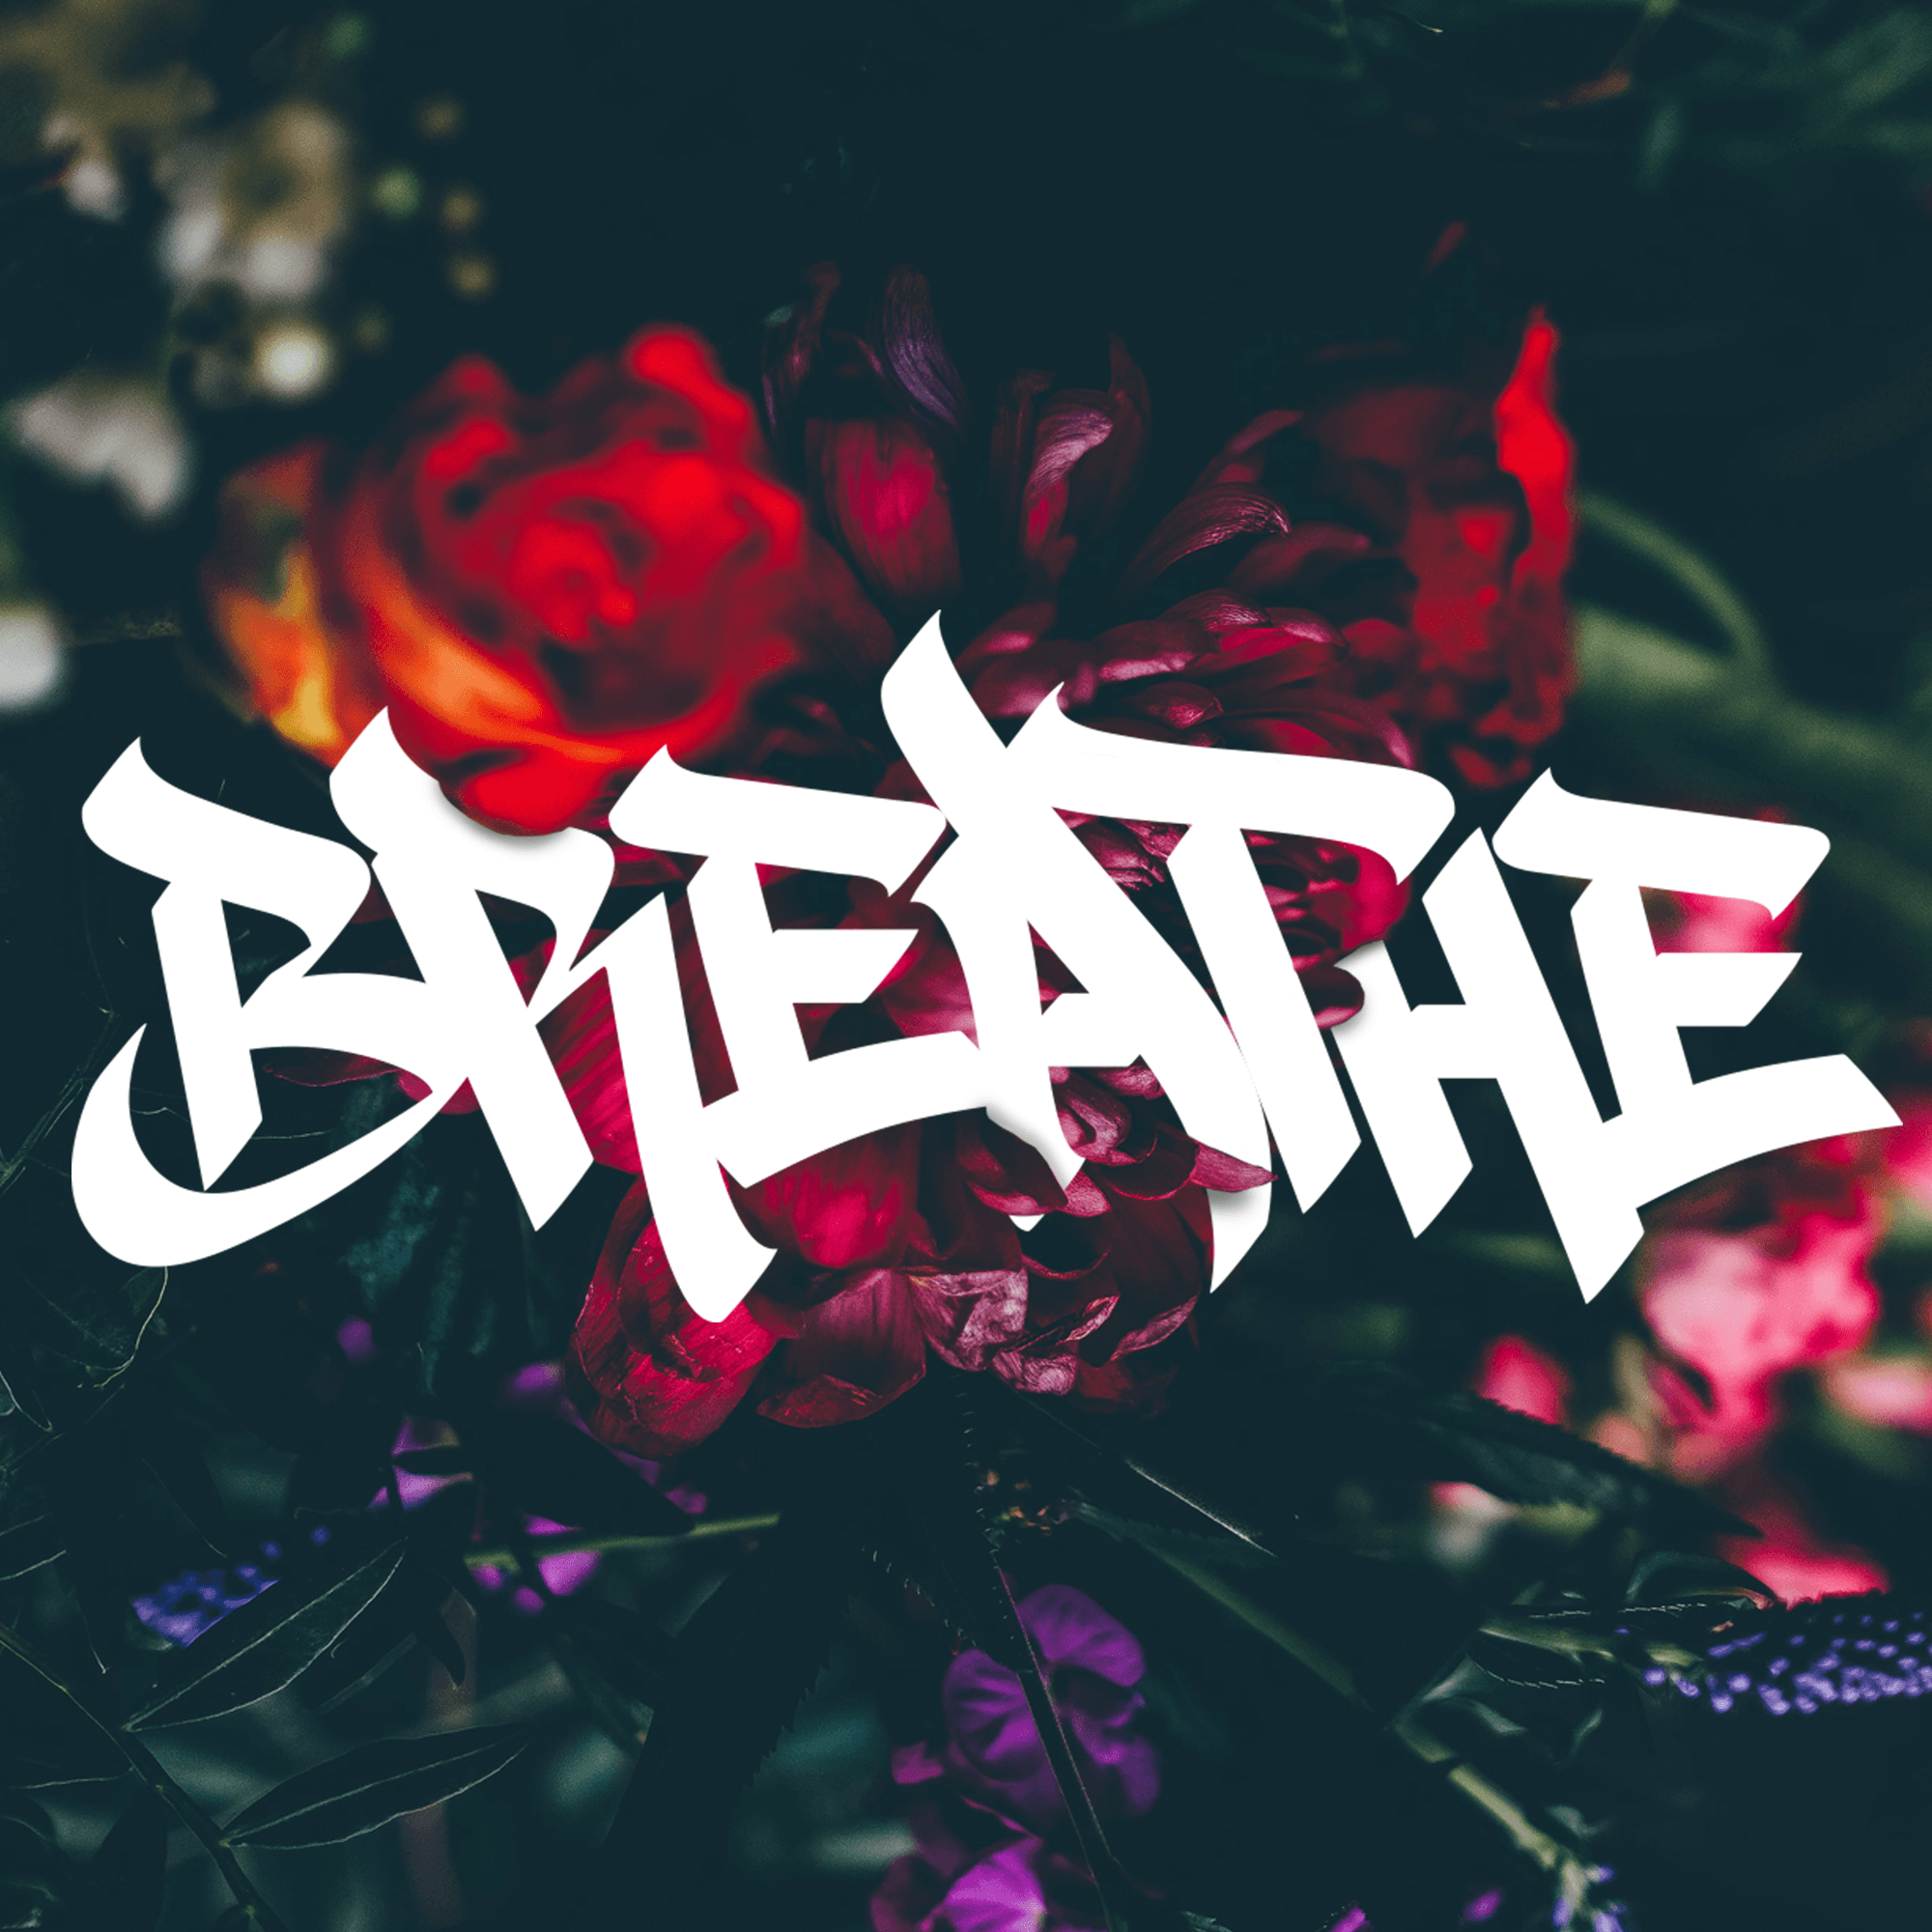 "Breathe"